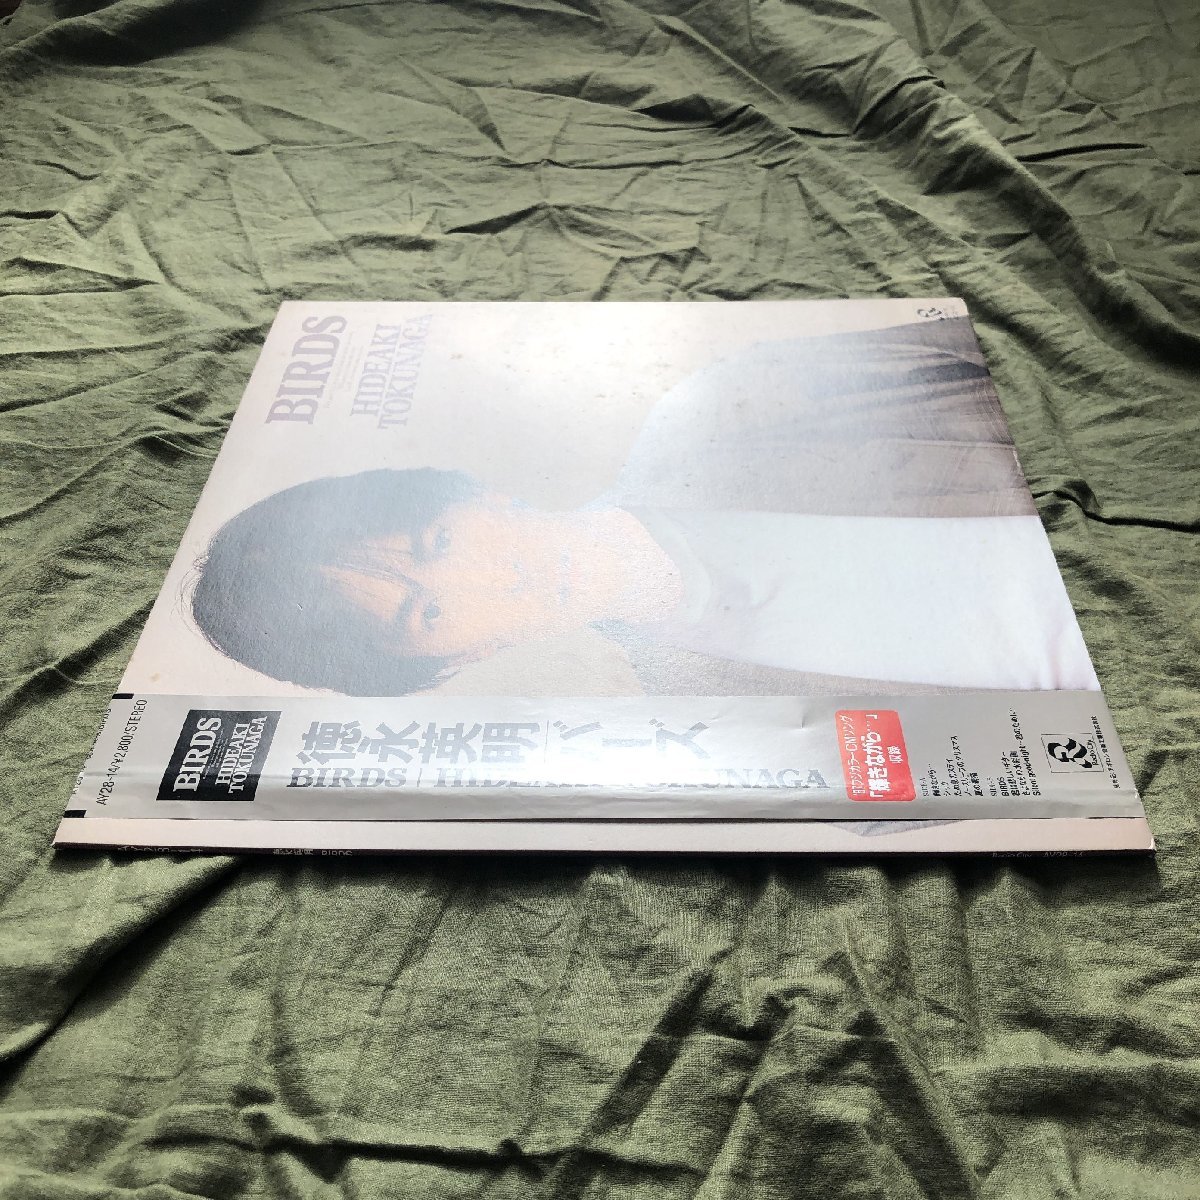 良盤 1987年 オリジナルリリース盤 徳永英明 Hideaki Tokunaga LPレコード バーズ Birds 帯付 J-Pop 輝きながら_画像3